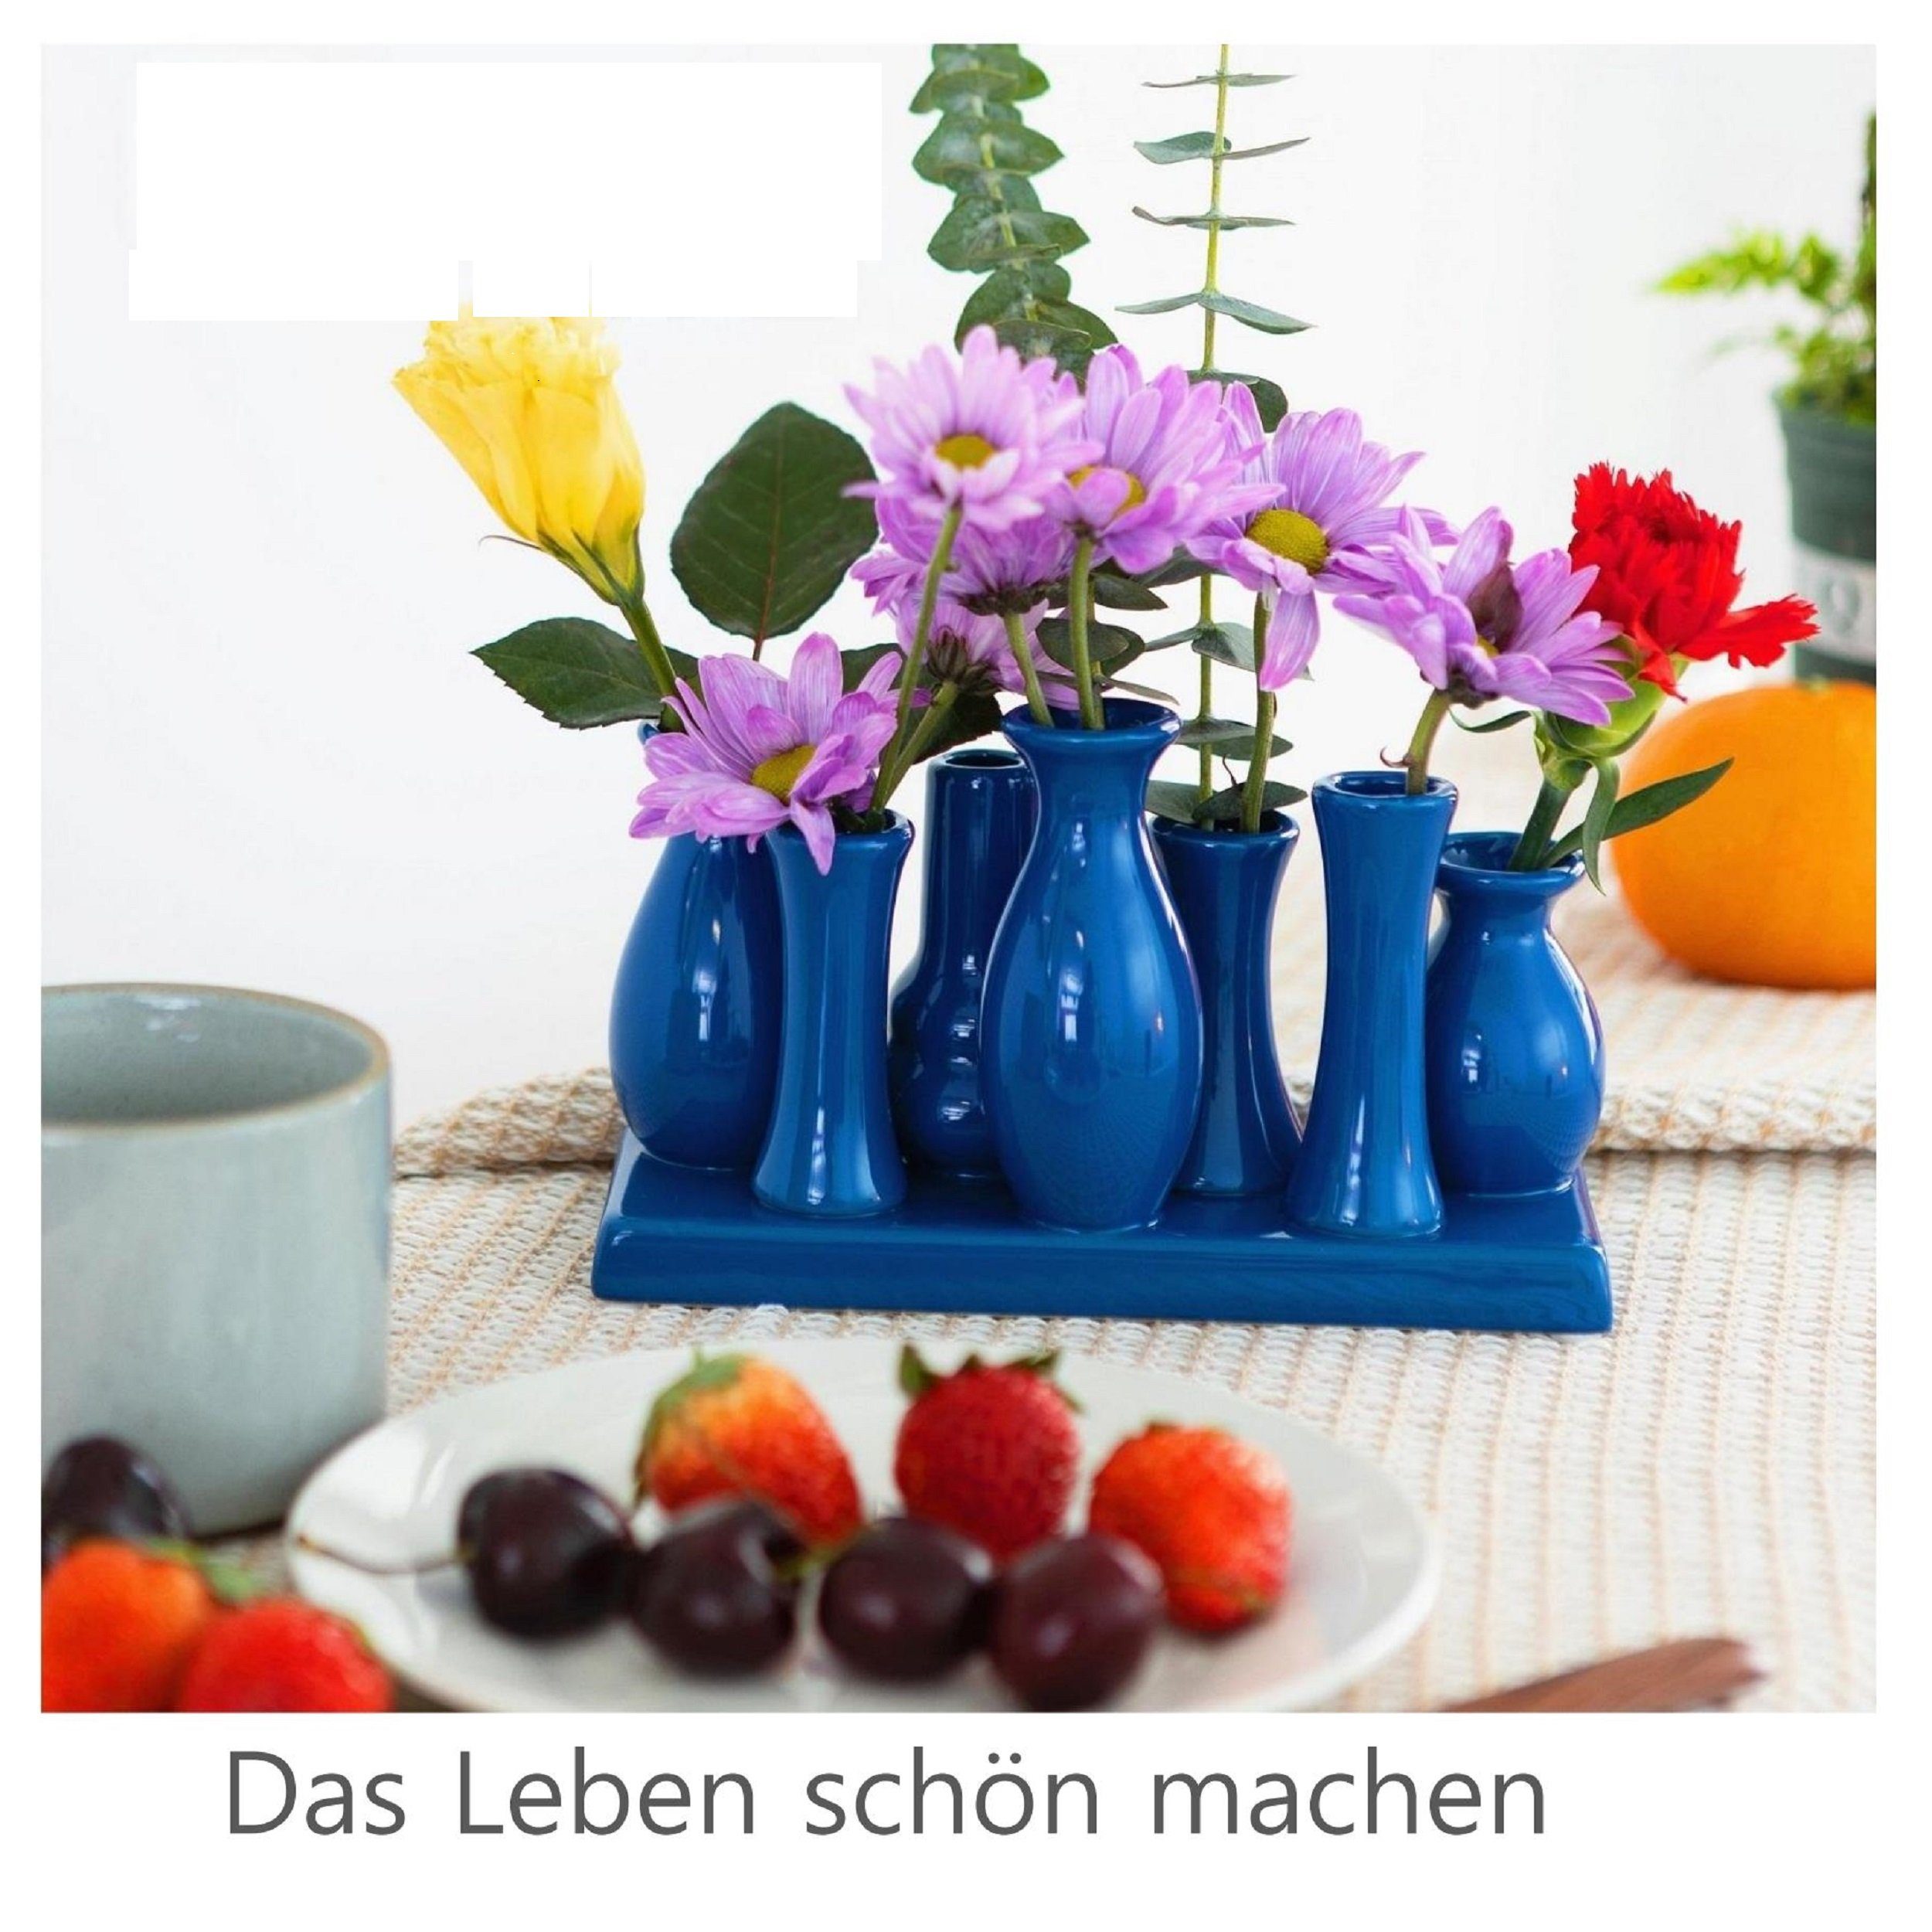 Jinfa Dekovase Handgefertigte kleine Keramik Set (7 Tablett Blumenvasen auf verbunden einem Deko blau), auf Vasen